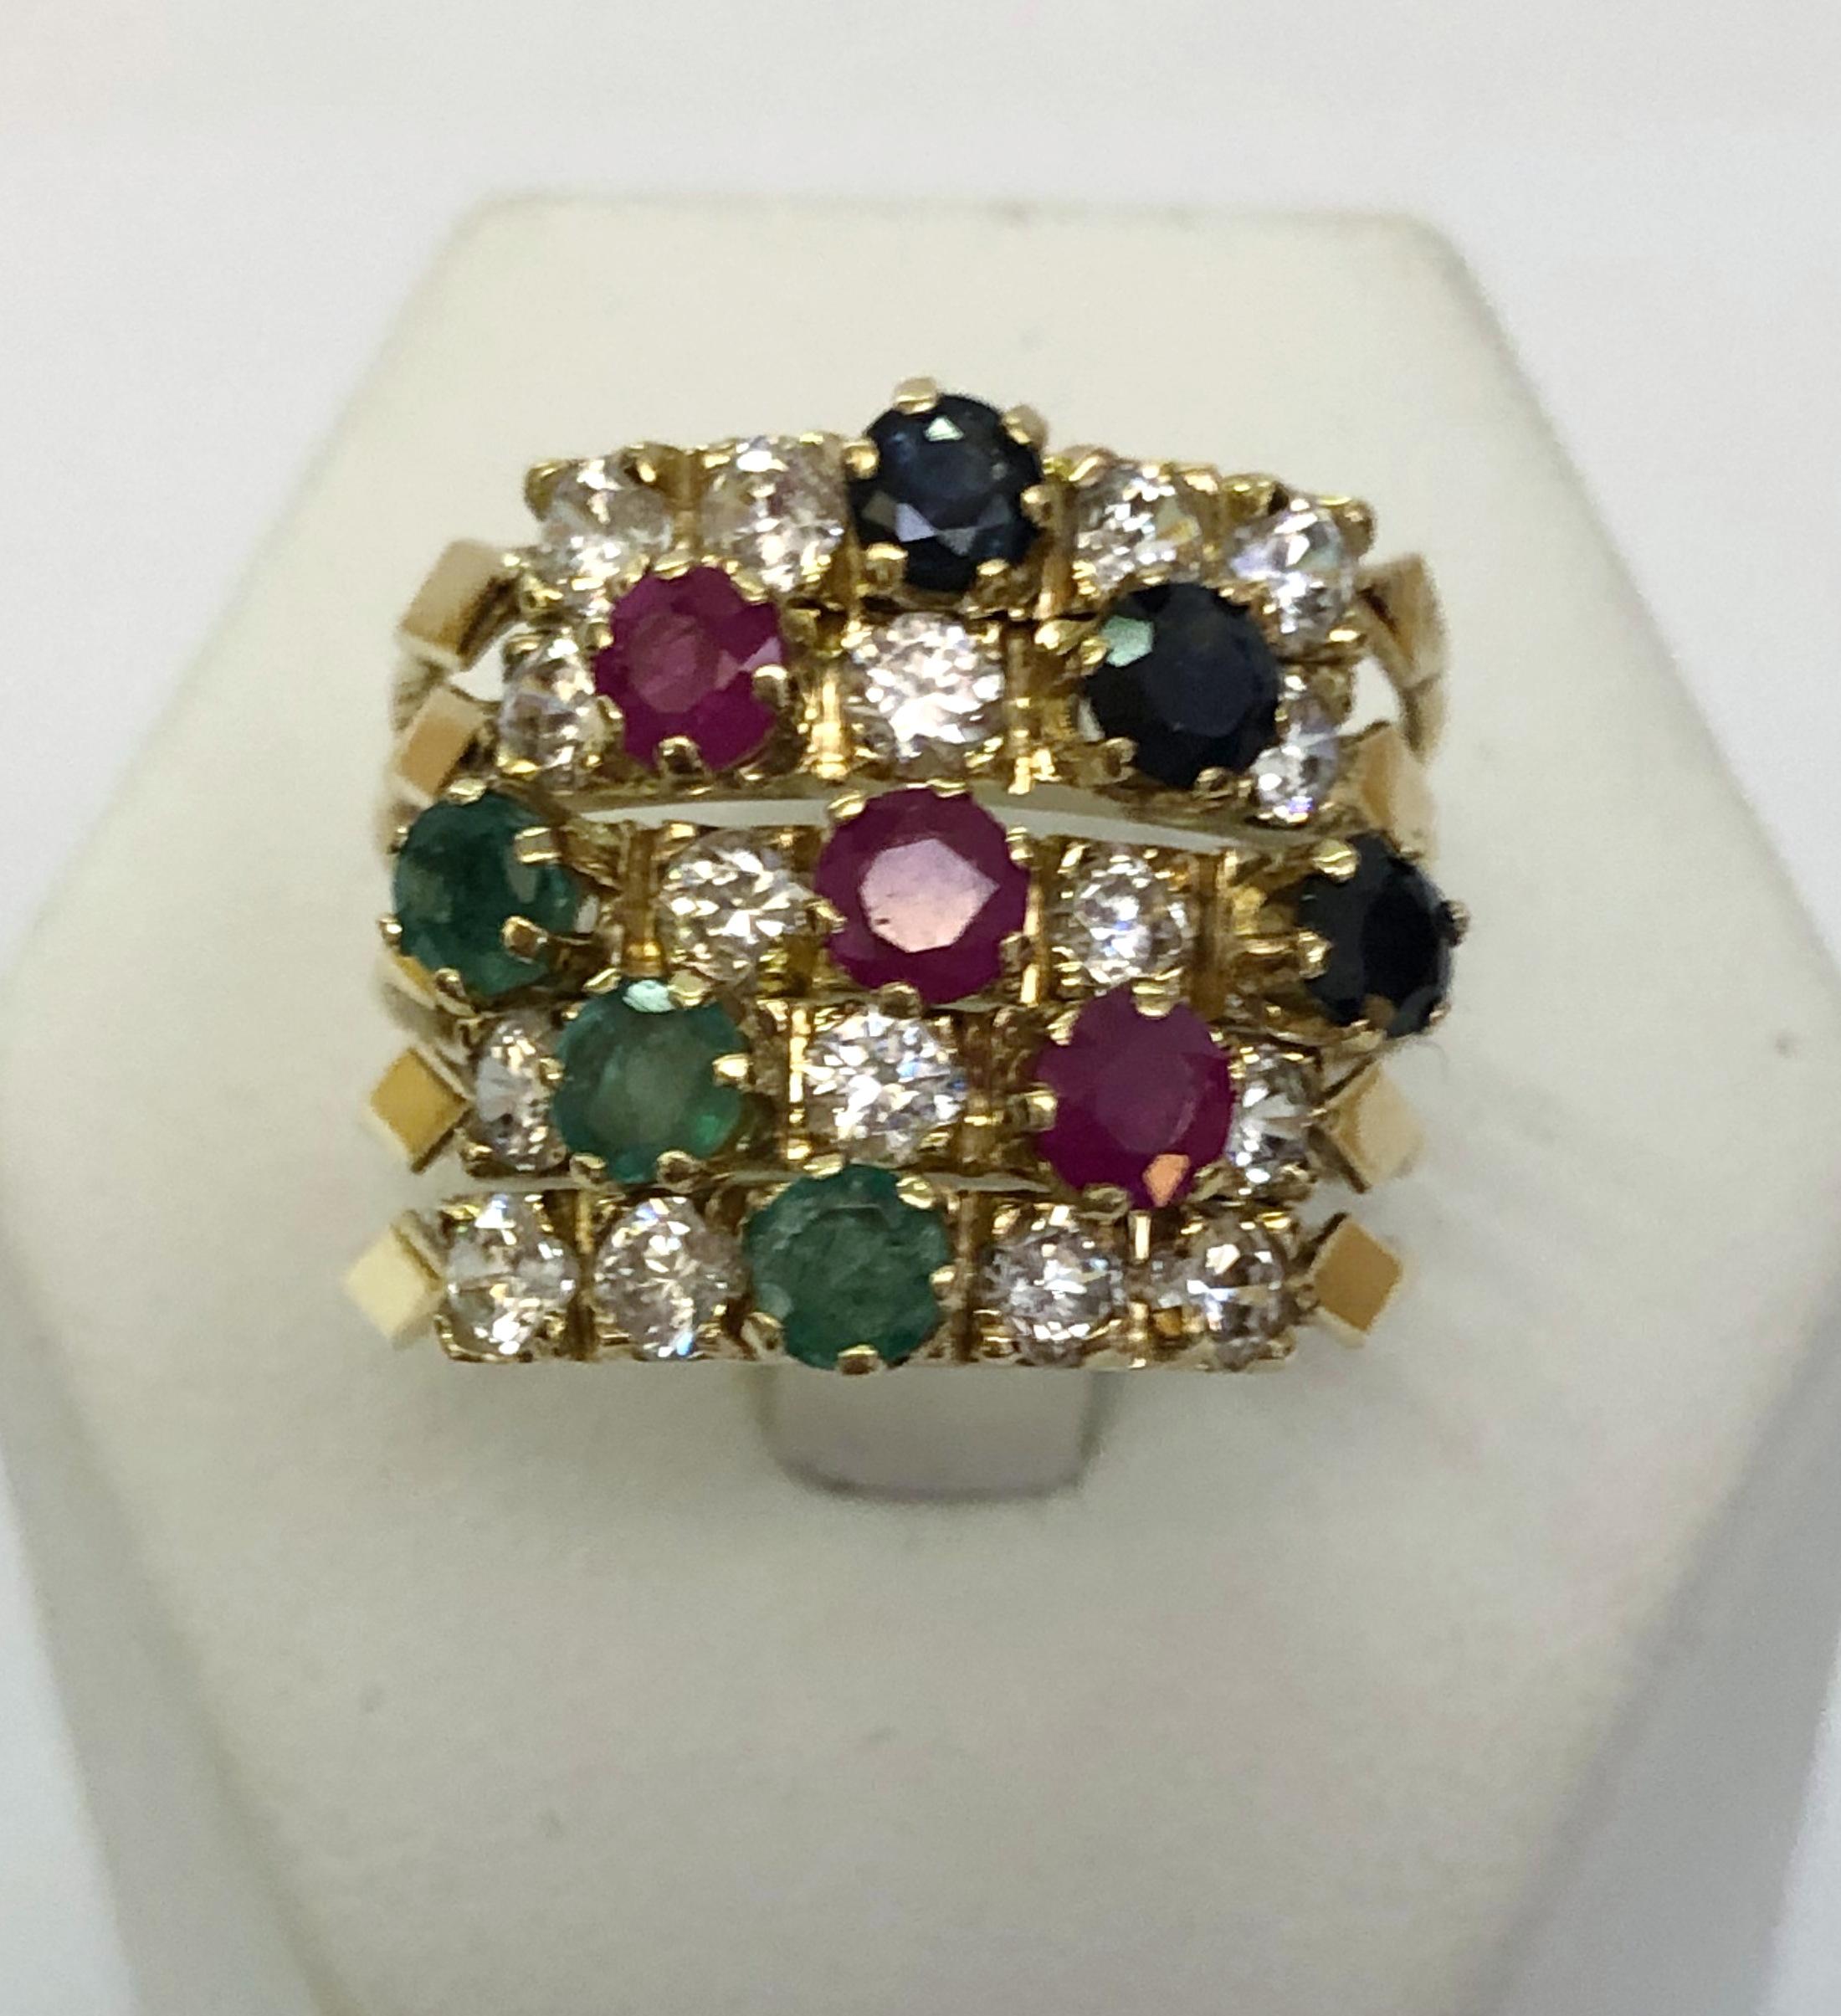 Bague en or jaune 14 carats composée de 5 anneaux avec émeraudes, rubis, saphirs et petits diamants / Fabriquée en Italie dans les années 1960
Taille de la bague : 7,5